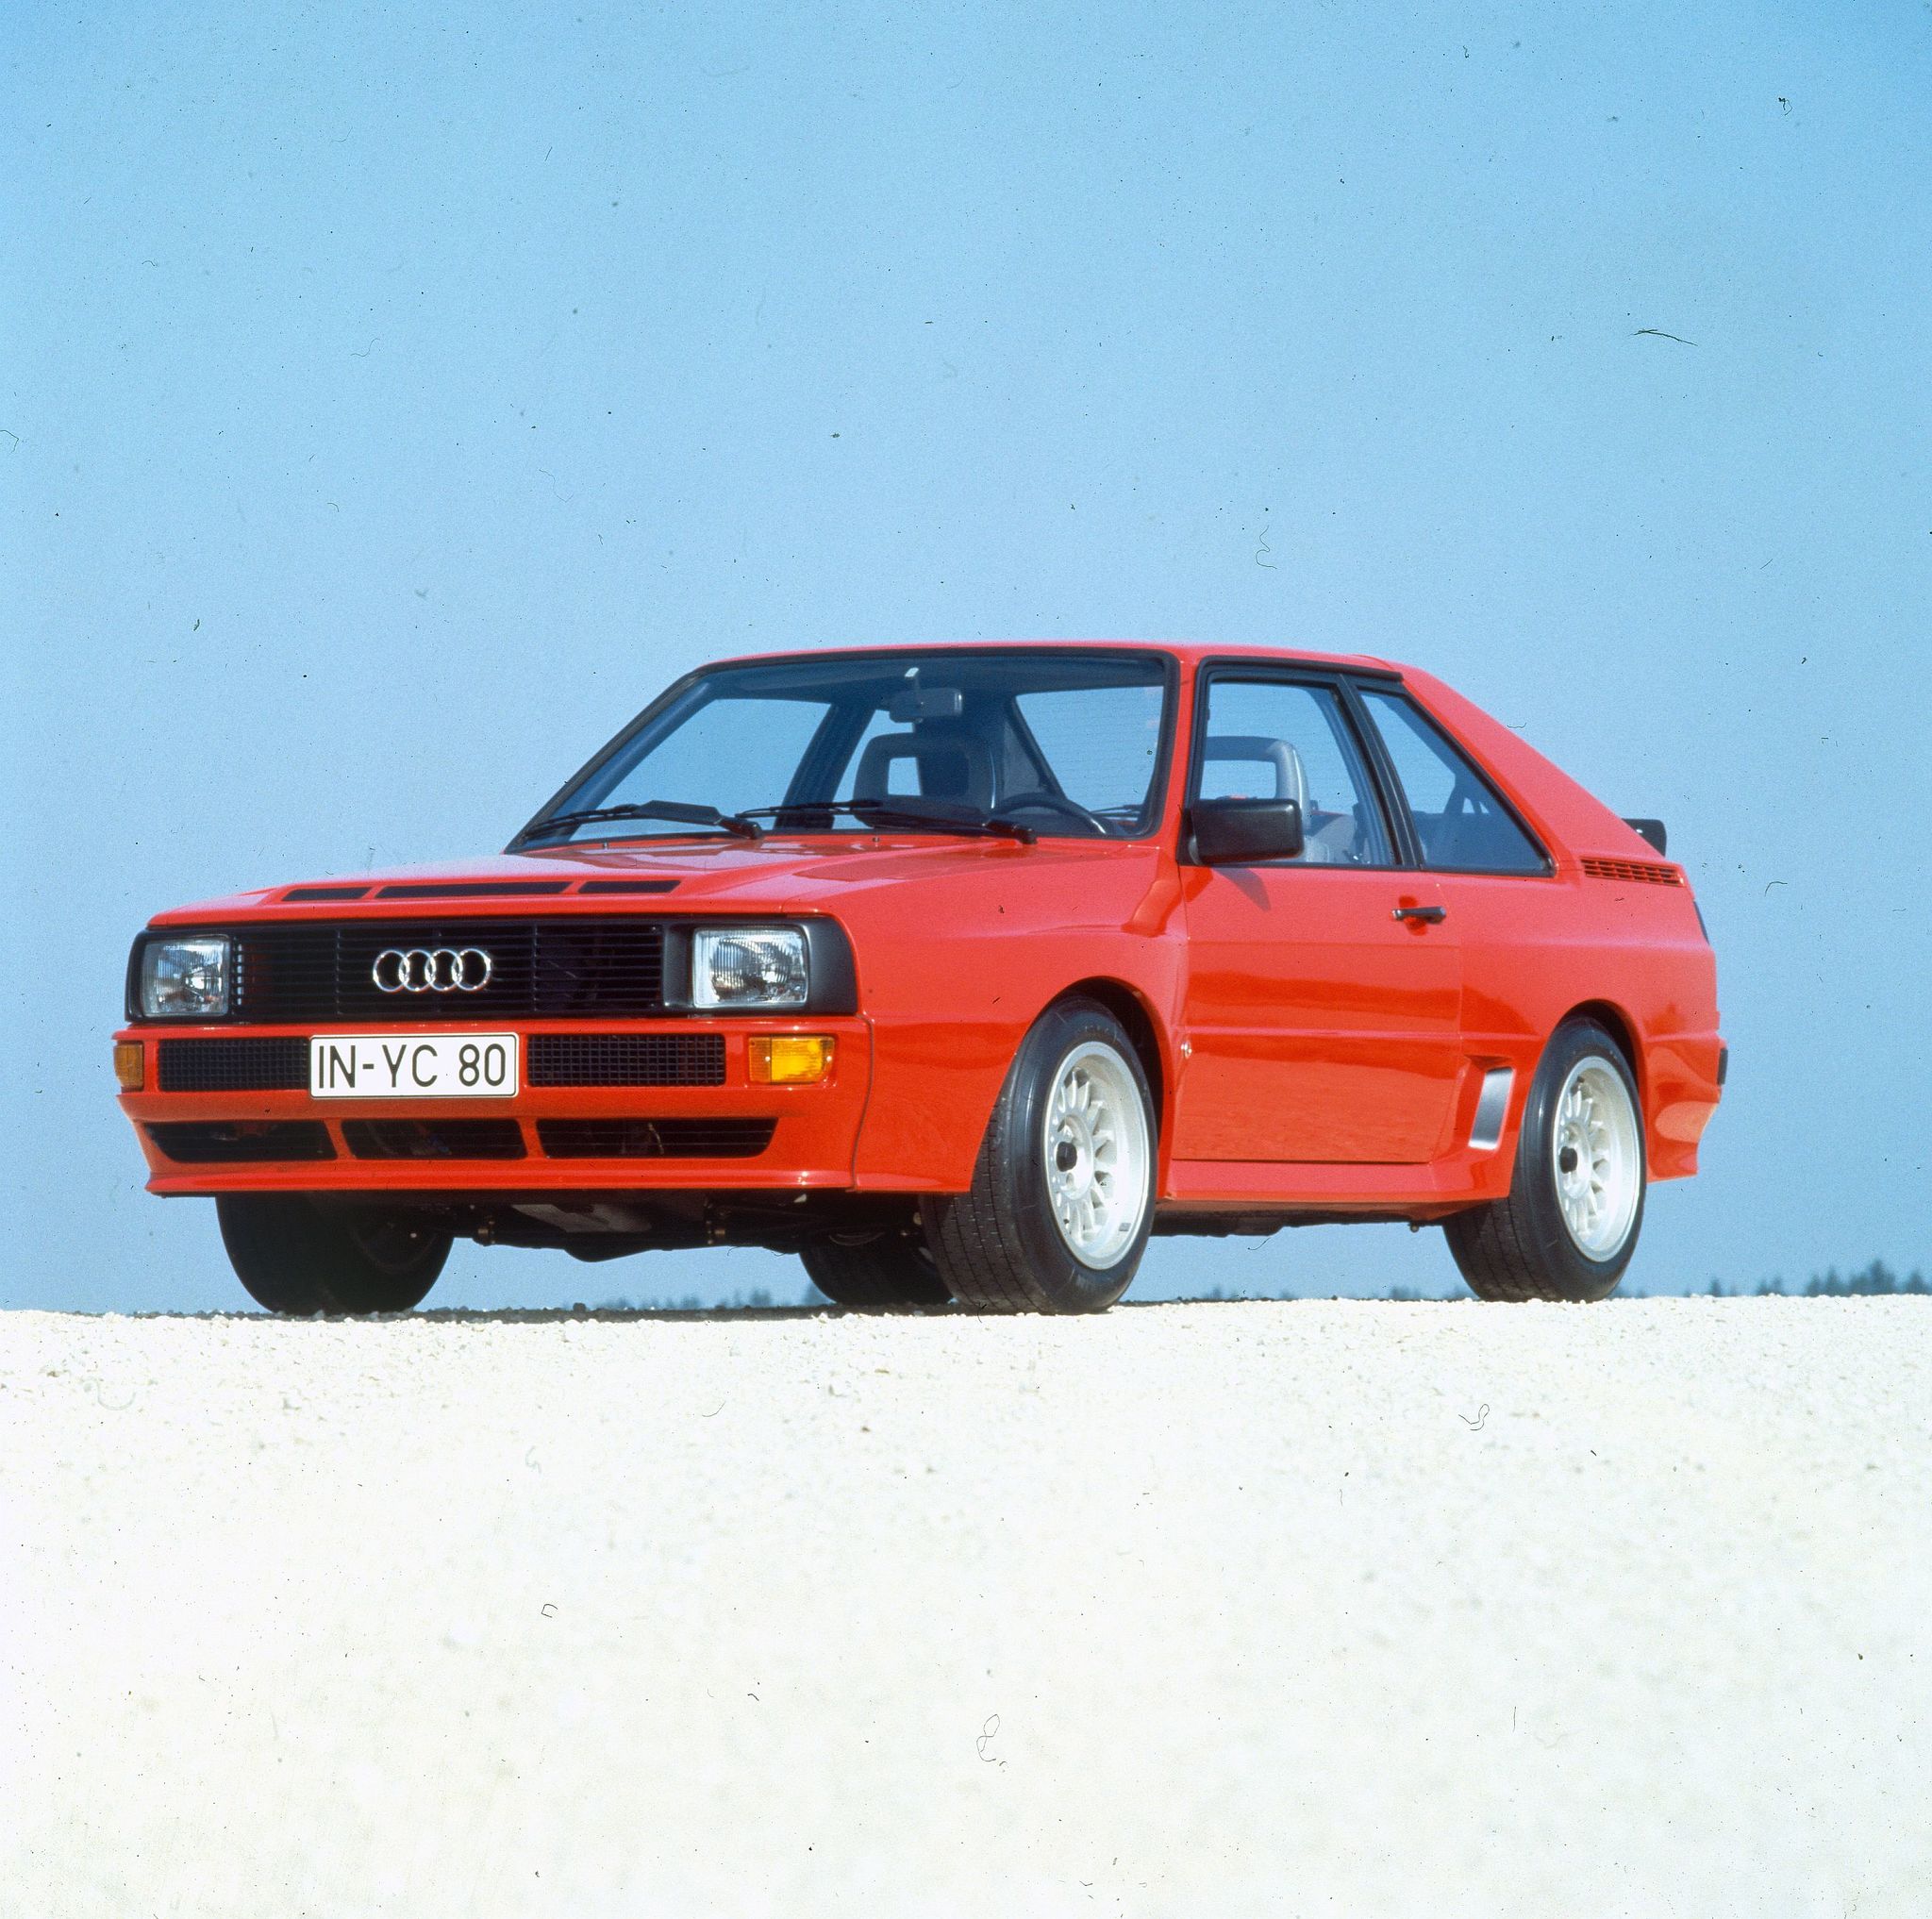 El especial modelo de Audi se caracterizaba por su recortada distancia entre ejes.